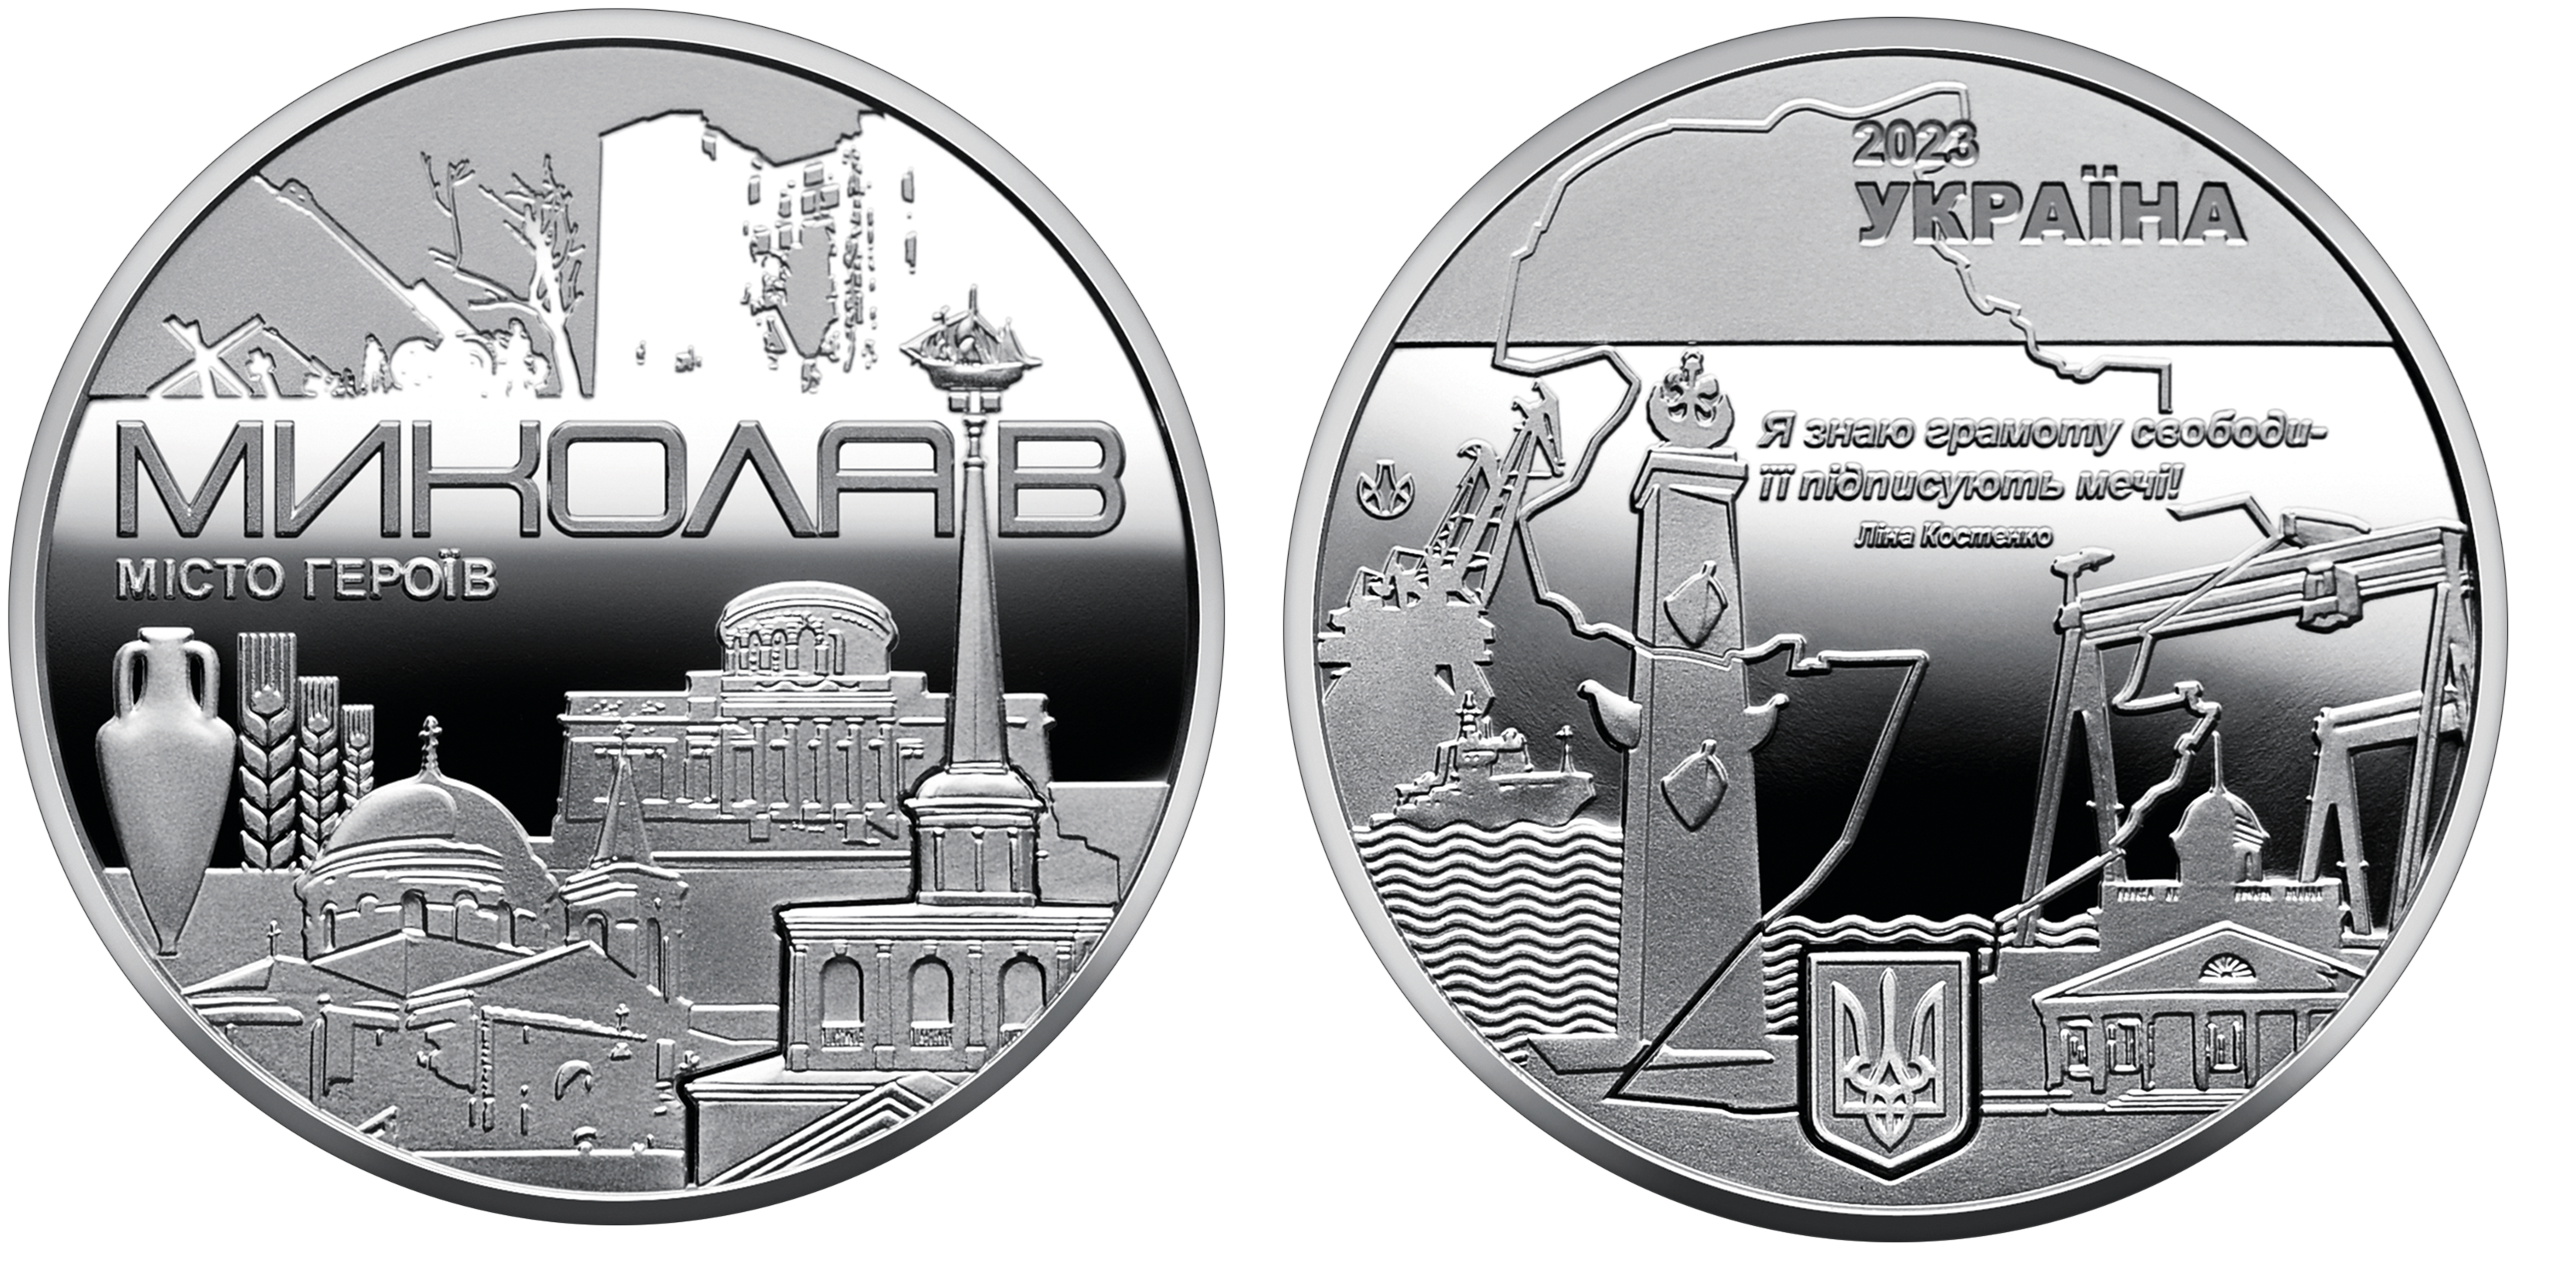 Продаж ювілейних монет від МТБ БАНК • купити ювілейні монети в Україні в MTB БАНК - фото 5 - mtb.ua